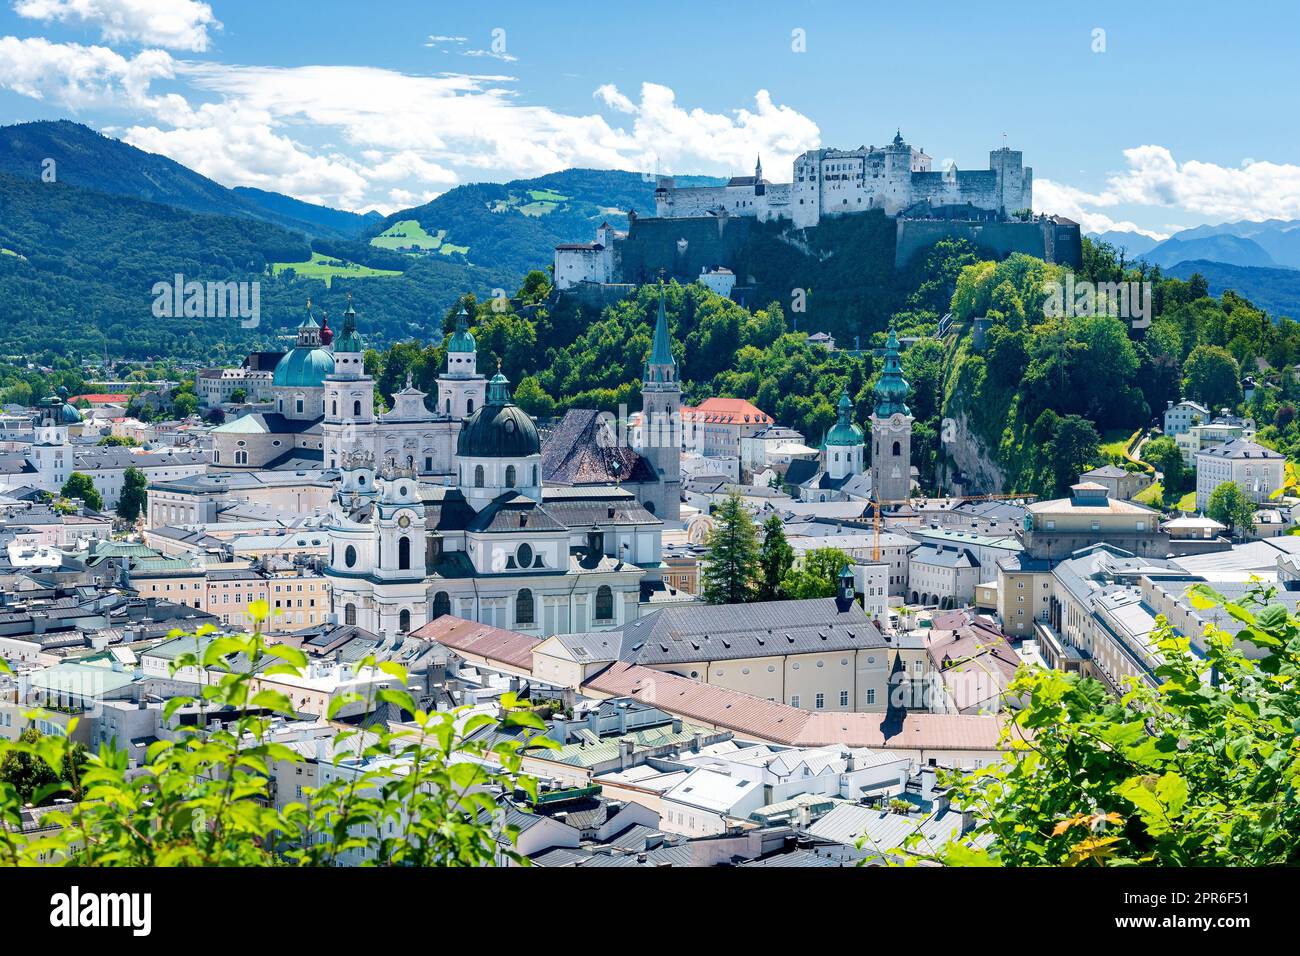 Patrimonio mondiale della città vecchia di Salisburgo in Austria, con la fortezza medievale di Hohensalzburg e i monti Salzkammergut Foto Stock